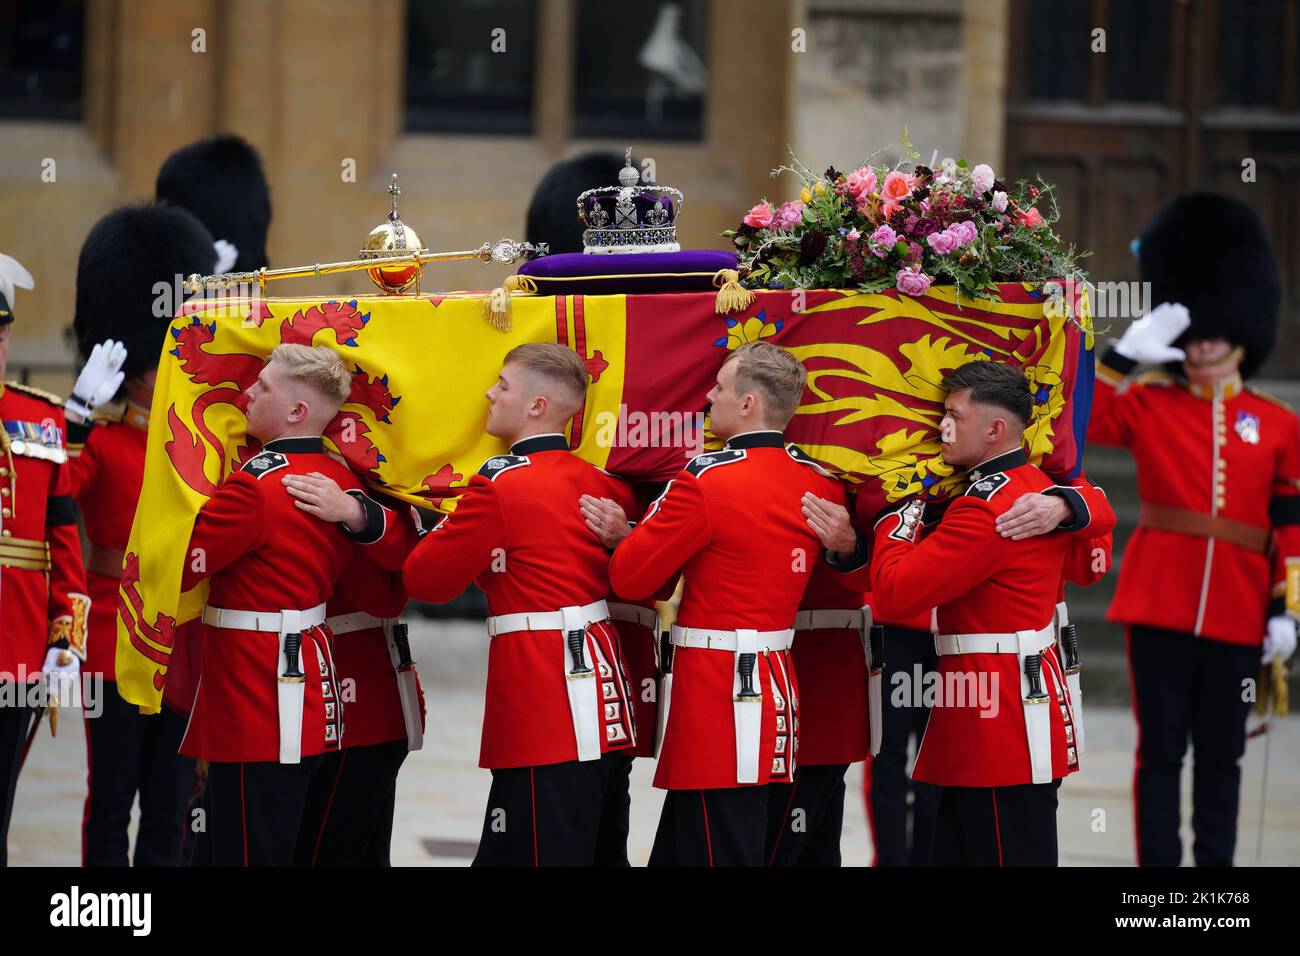 Le cercueil de la reine Elizabeth II est transporté par des pallbearers à l'état funéraire tenu à l'abbaye de Westminster, Londres. Date de la photo: Lundi 19 septembre 2022. Banque D'Images